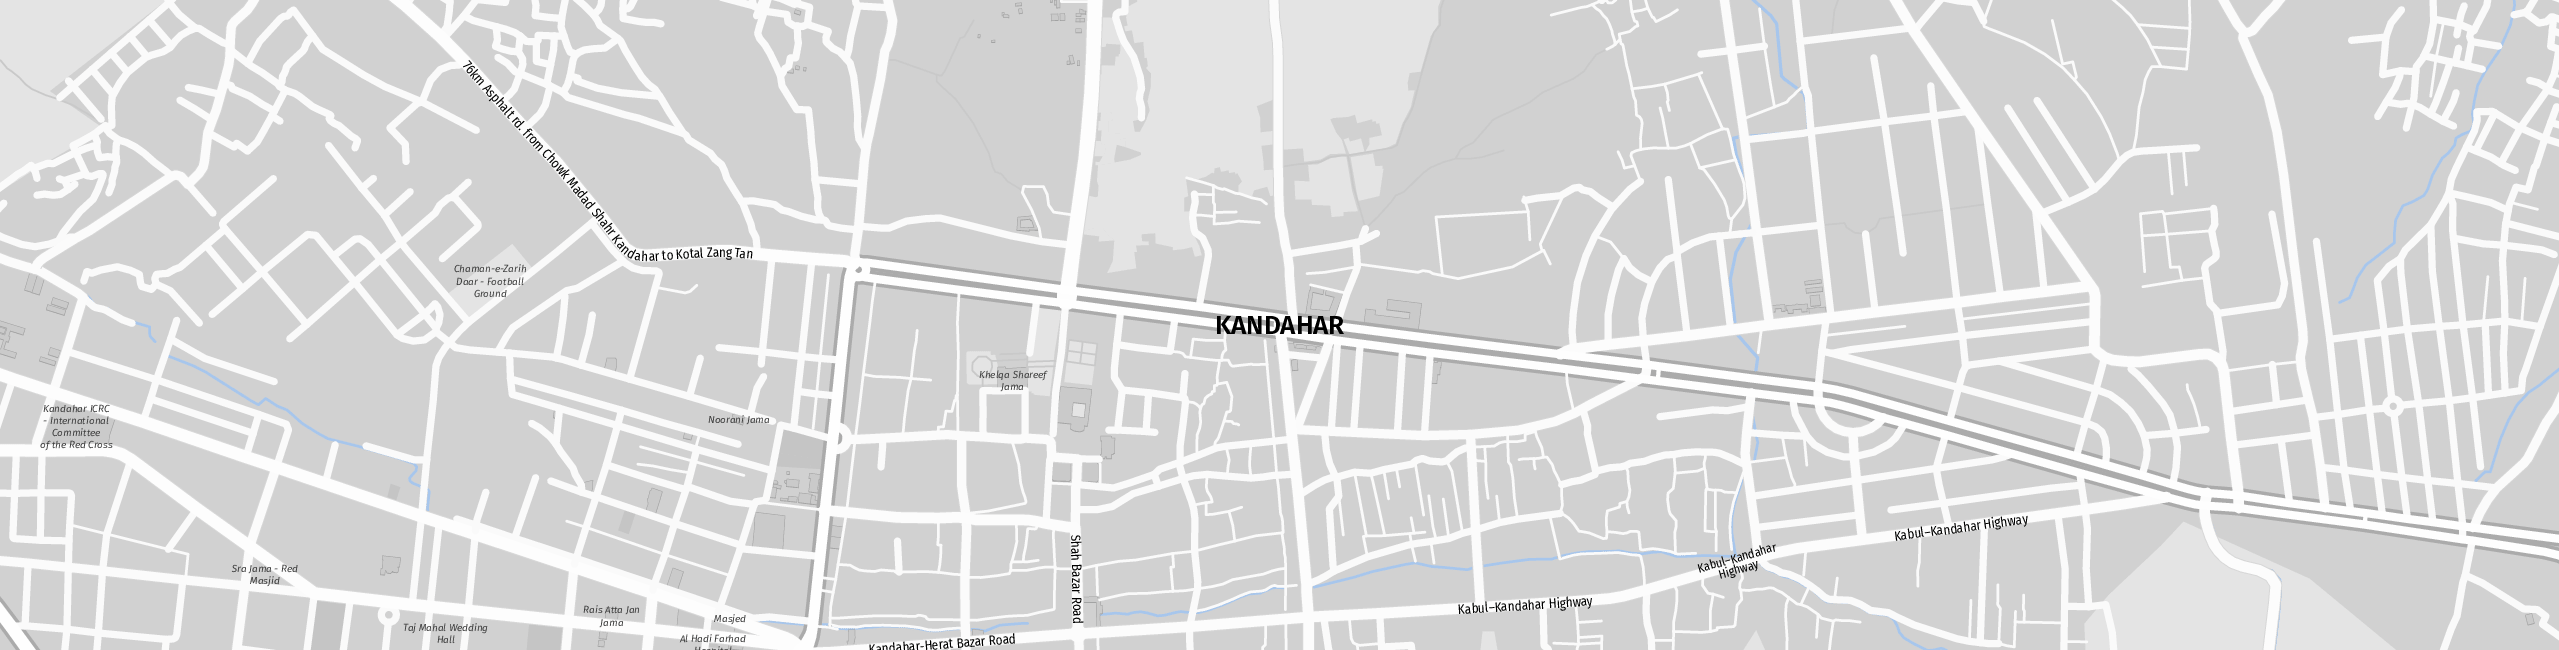 Stadtplan Kandahar zum Downloaden.